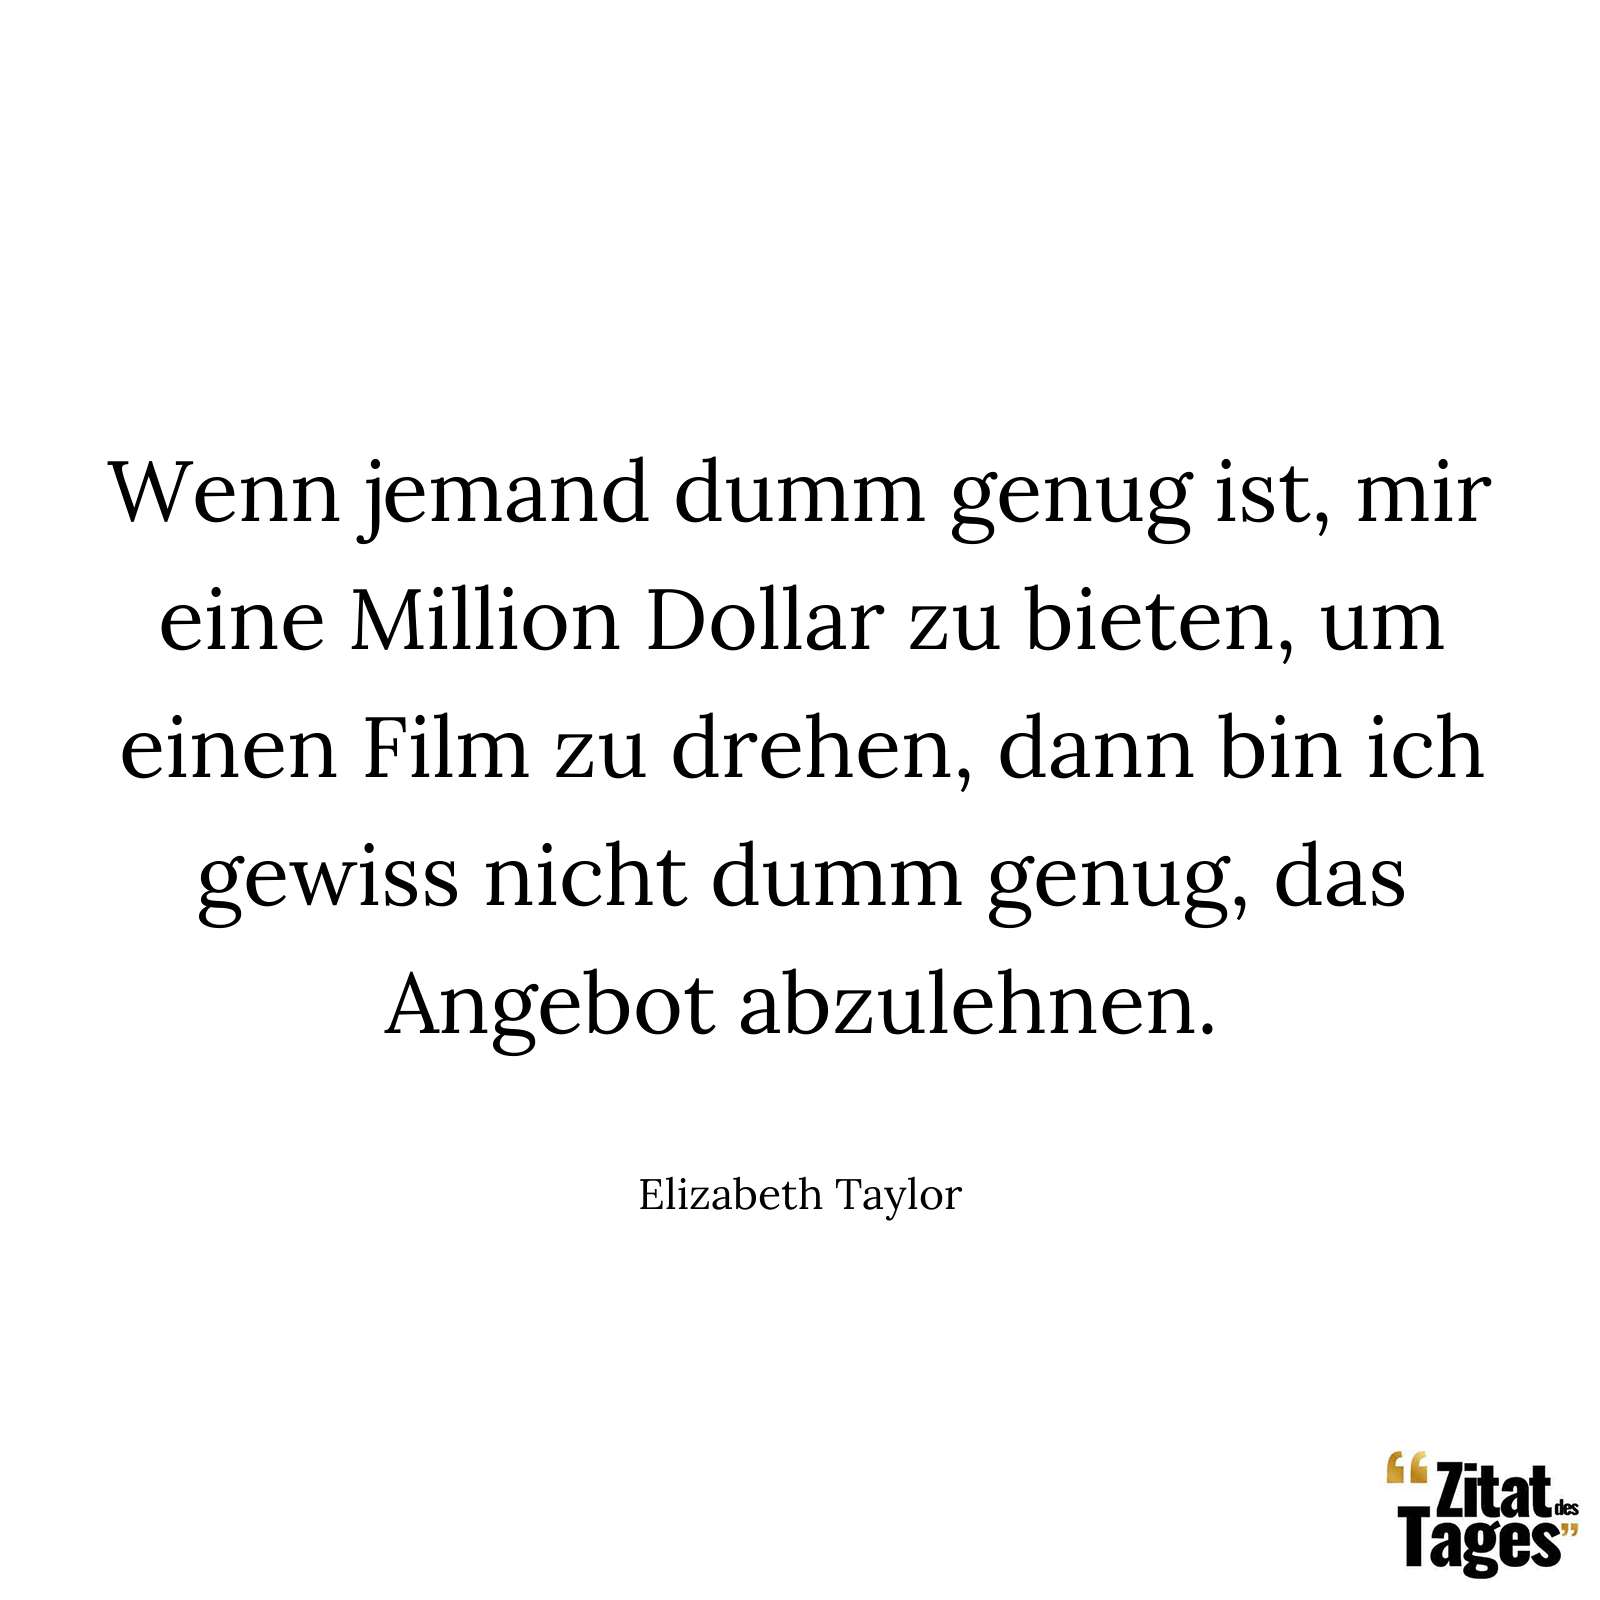 Wenn jemand dumm genug ist, mir eine Million Dollar zu bieten, um einen Film zu drehen, dann bin ich gewiss nicht dumm genug, das Angebot abzulehnen. - Elizabeth Taylor